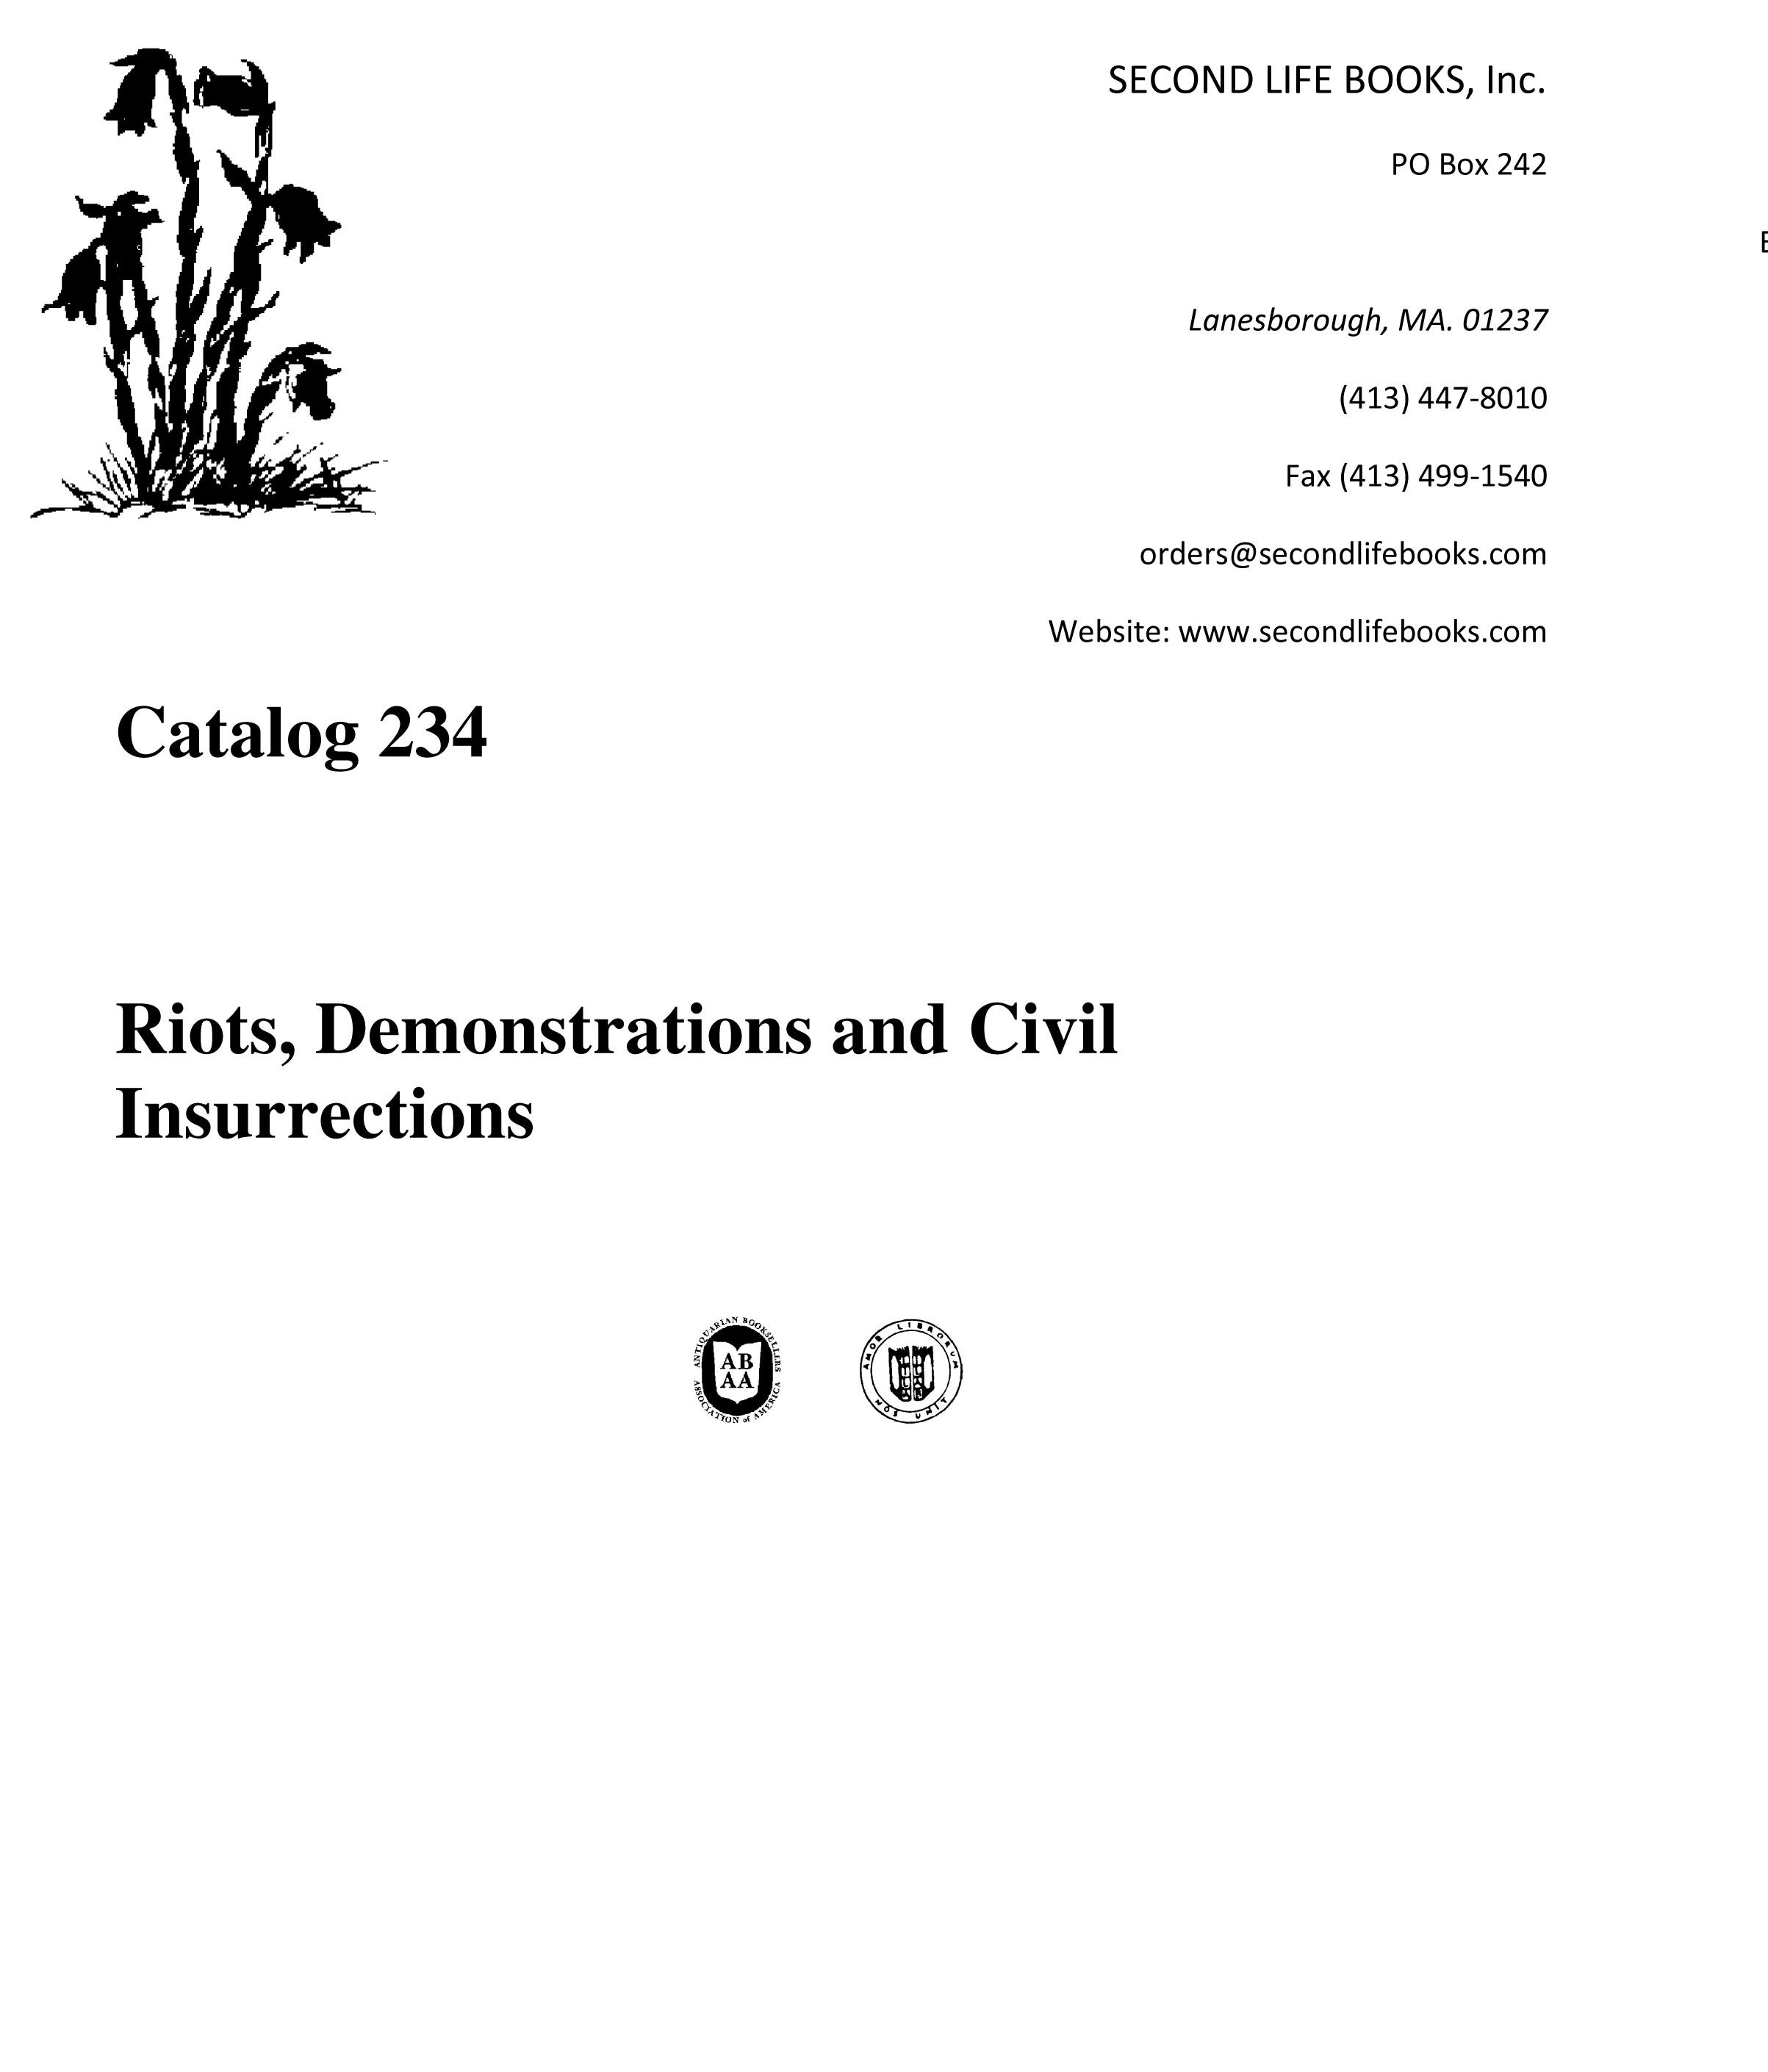 Catalog 234: Riots